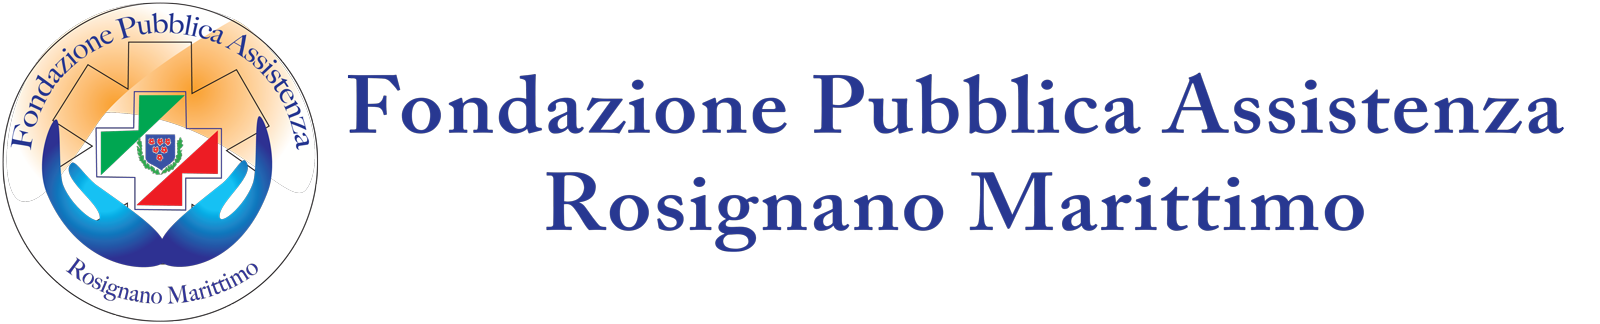 Fondazione Pubblica Assistenza Rosignano Marittimo